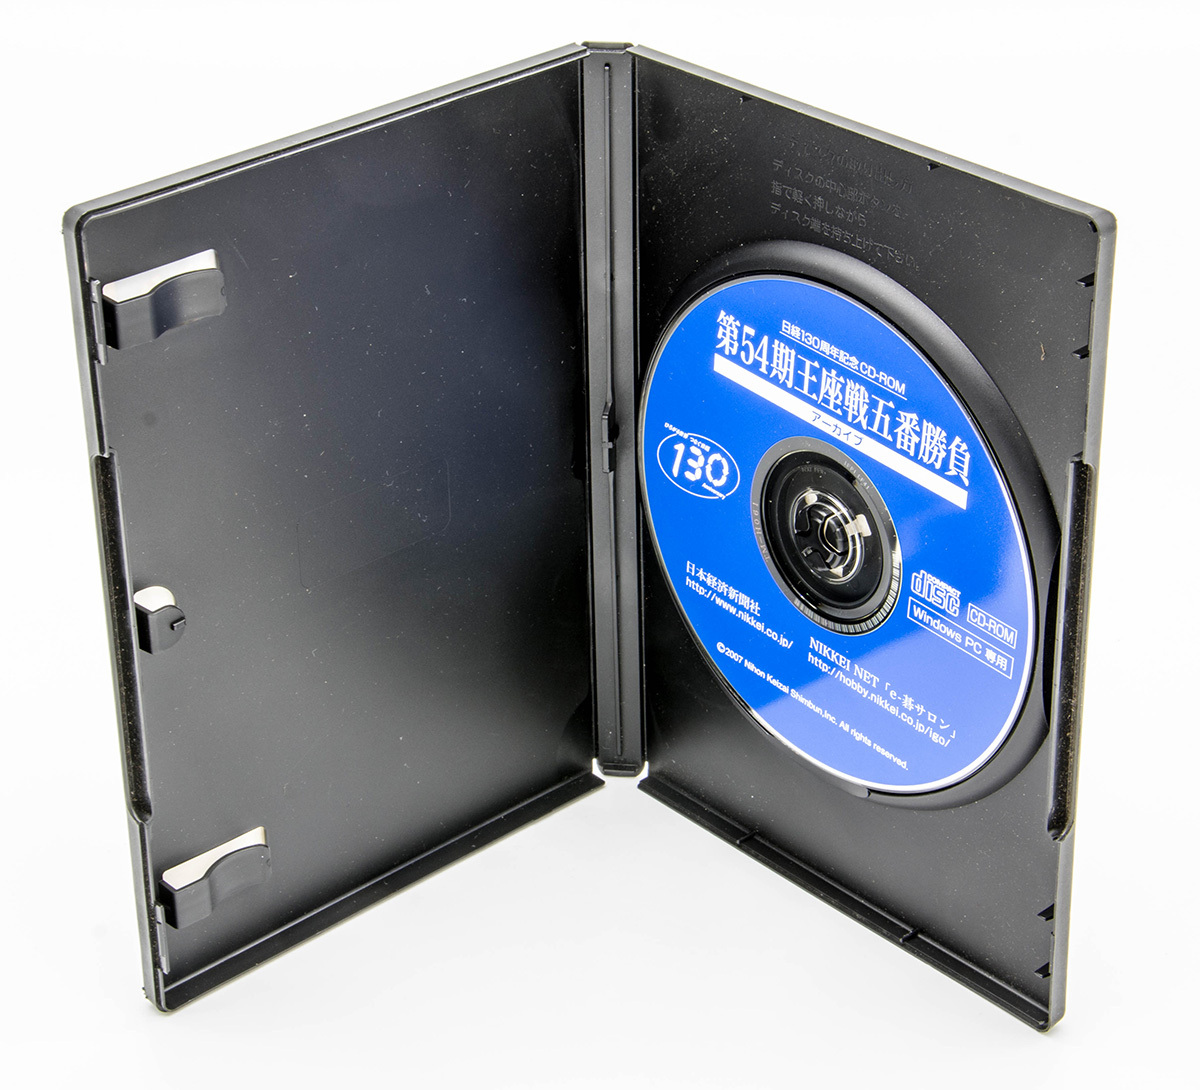 第54期王座戦五番勝負 アーカイブ 囲碁 日経130周年記念CD-ROM Windows CD-ROM 中古 非売品_画像3